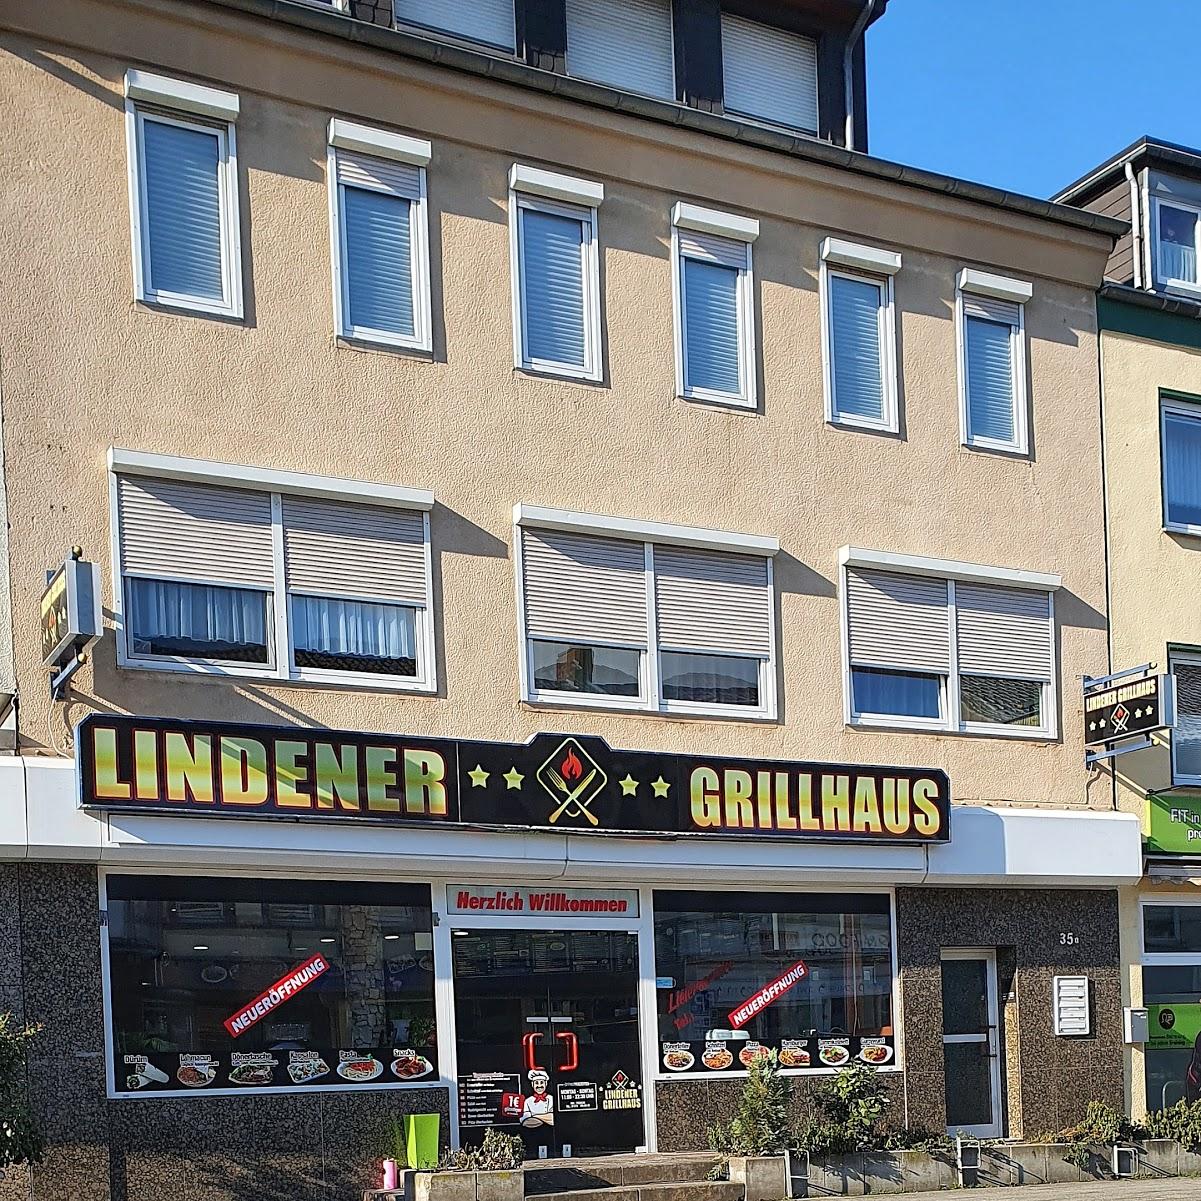 Restaurant "Lindener Grillhaus" in Bedburg